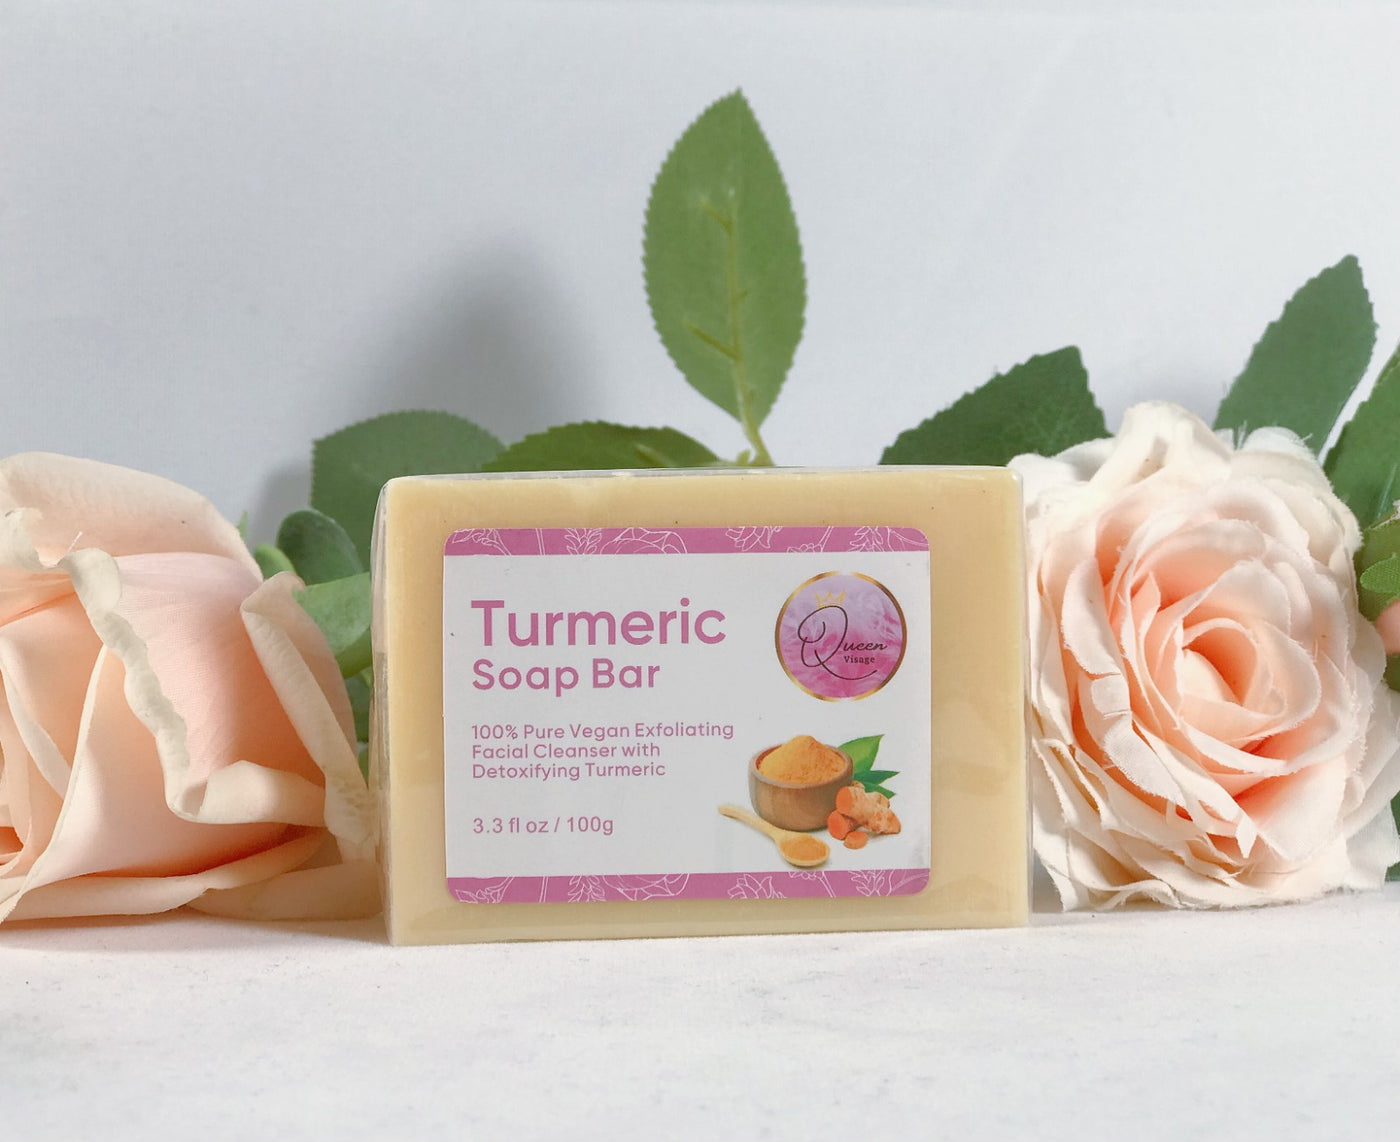 Tumeric Soap Bar 100% Pure Vegan Exfoliating (Pack of 3)